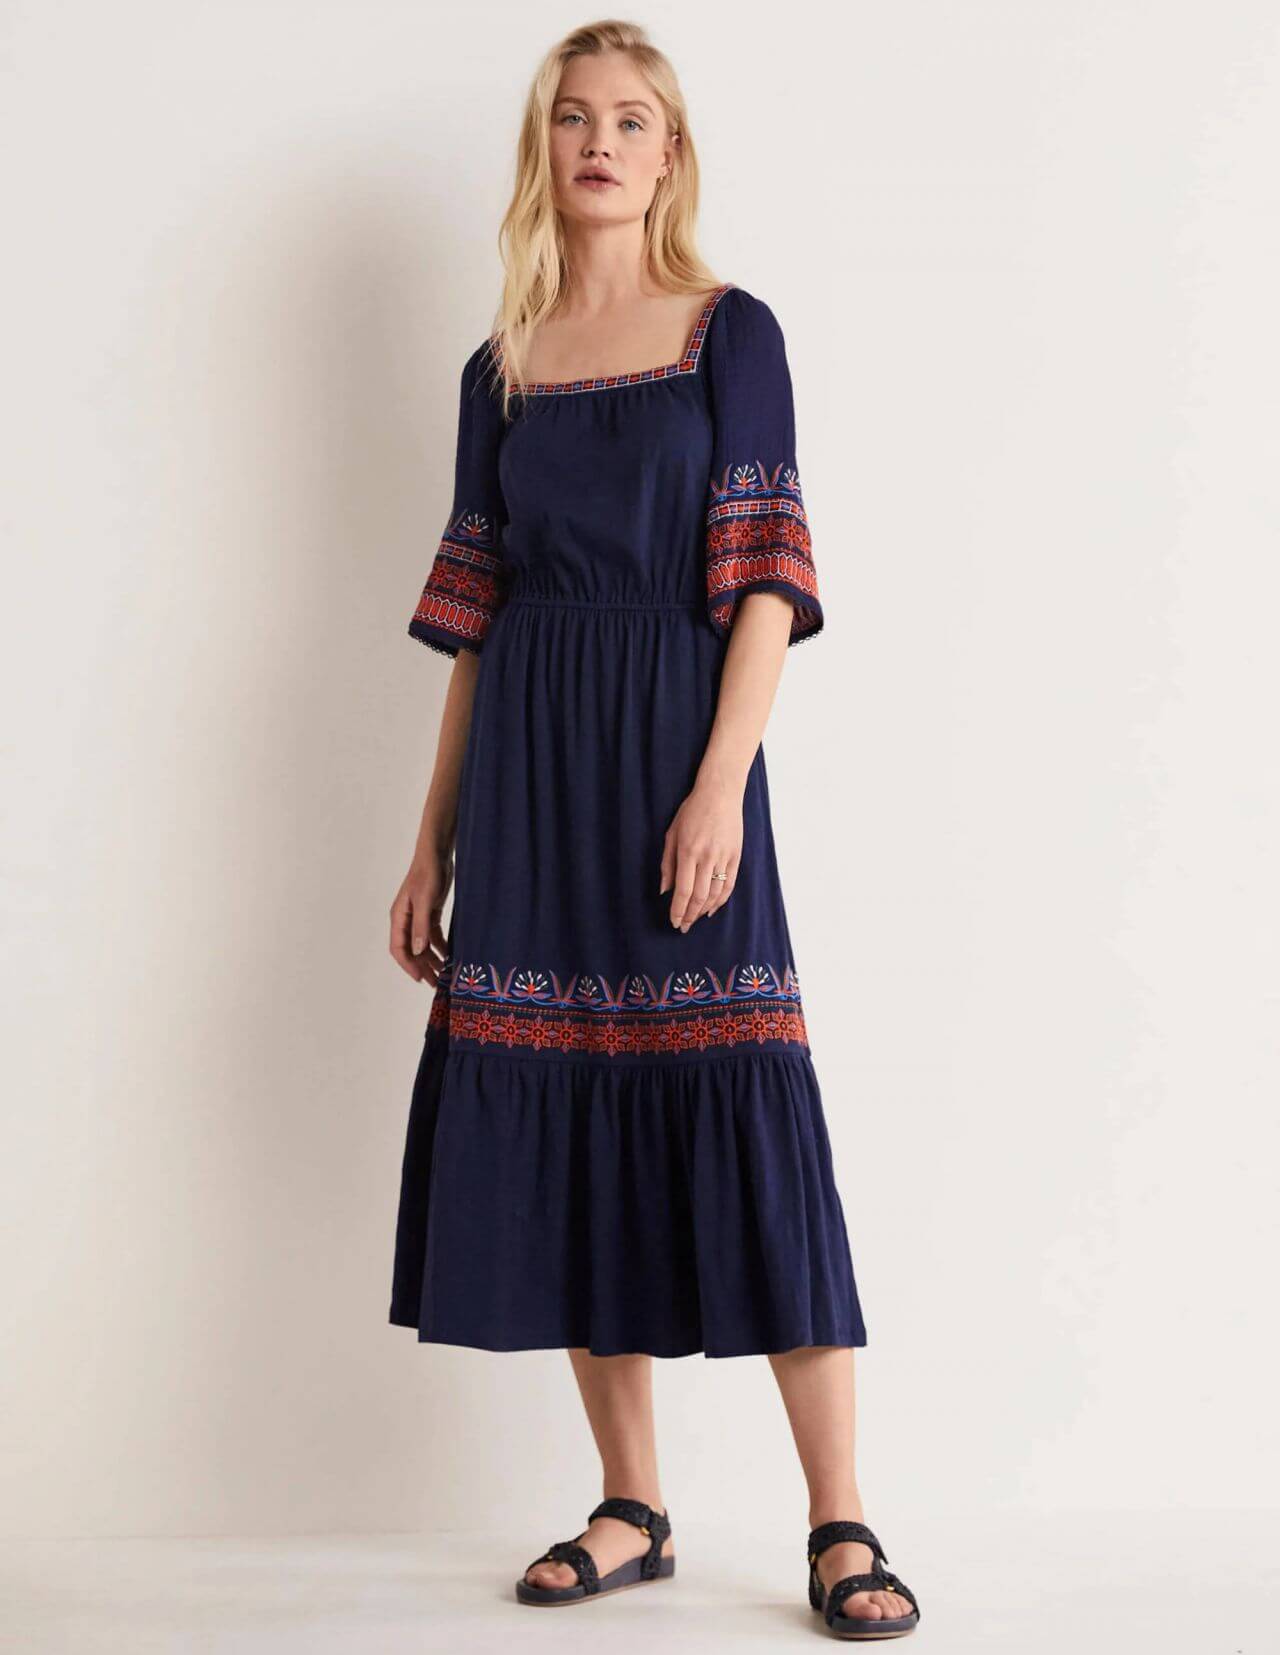 Camilla Forchhammer Christensen Lovely Looks In Blue Printed Border Long Maxi Dress